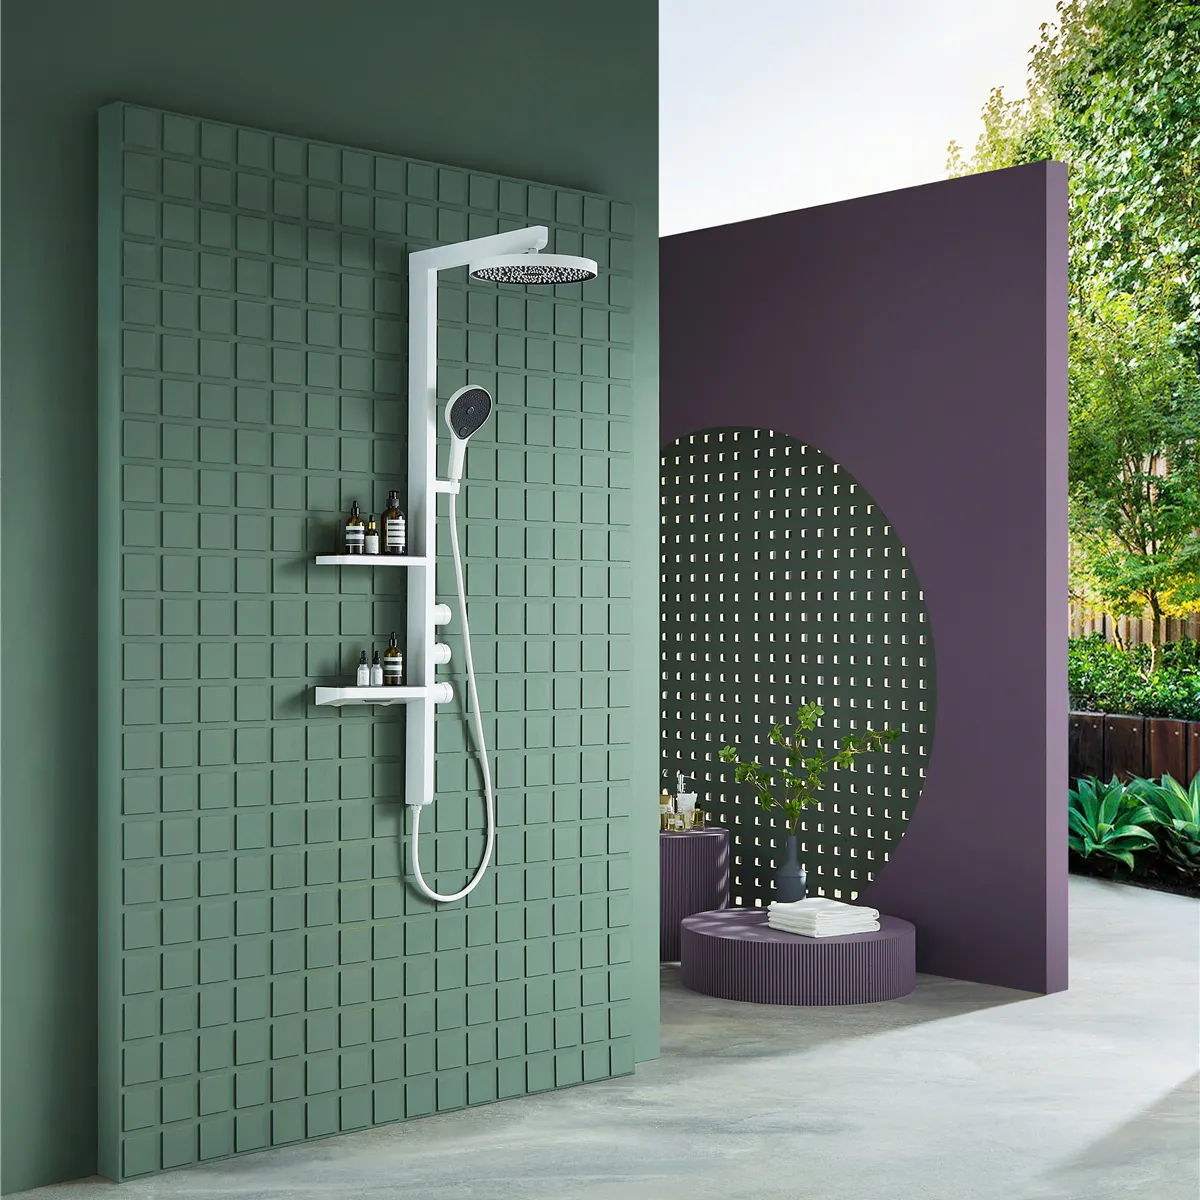 Luxus New Design Wand montage Messing Dusch system Weiß Badezimmer Niederschlag Dusch armaturen Mixer Set mit hoher Qualität